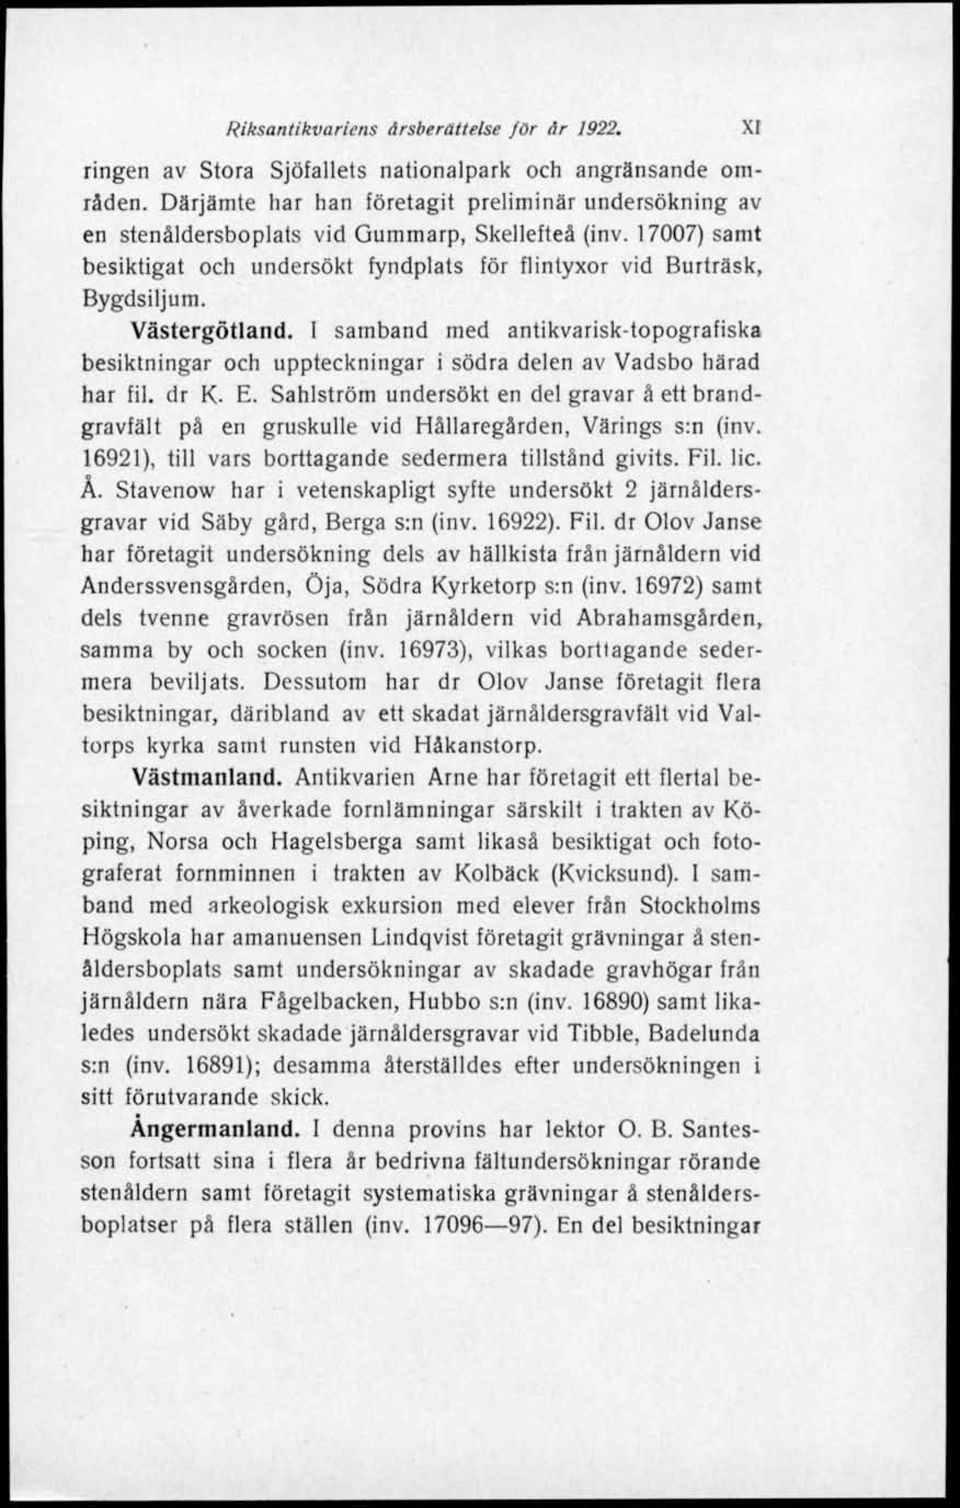 Västergötland. I samband med antikvarisk-topografiska besiktningar och uppteckningar i södra delen av Vadsbo härad har fil. dr K. E.